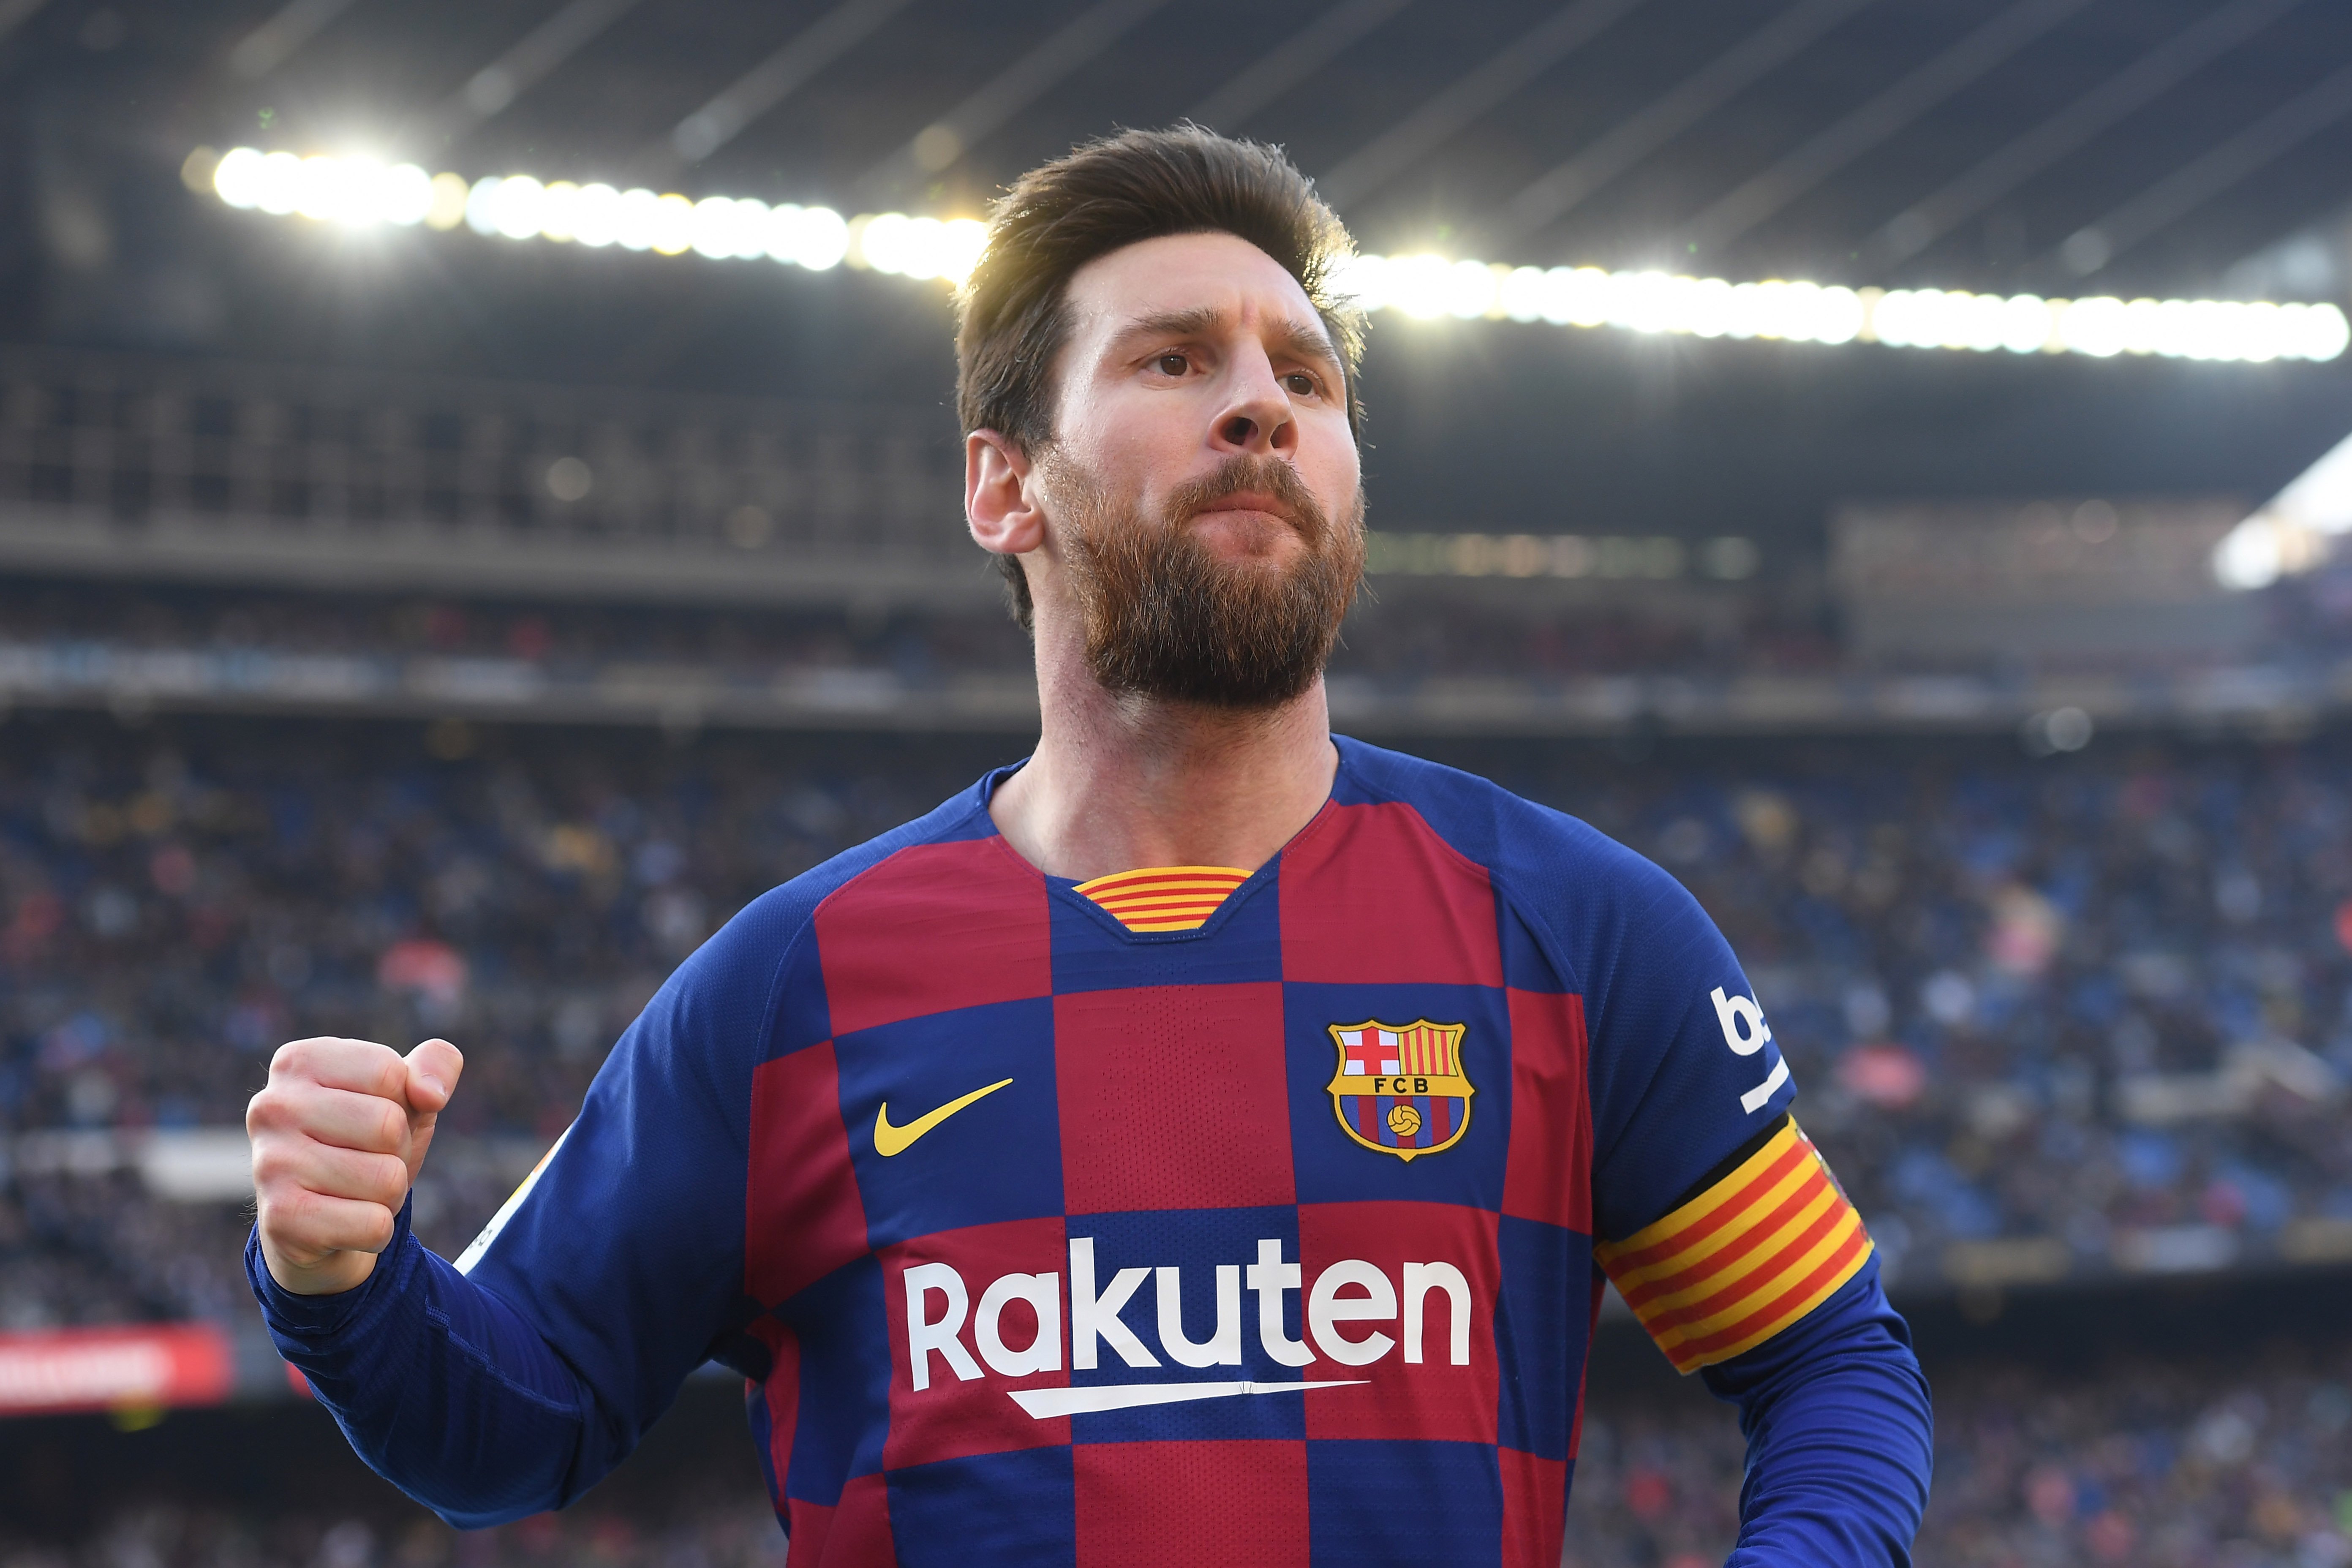 FAVORITOS - Messi (Barcelona) - 44 jogos, 31 gols e 26 assistências - Sem títulos na temporada